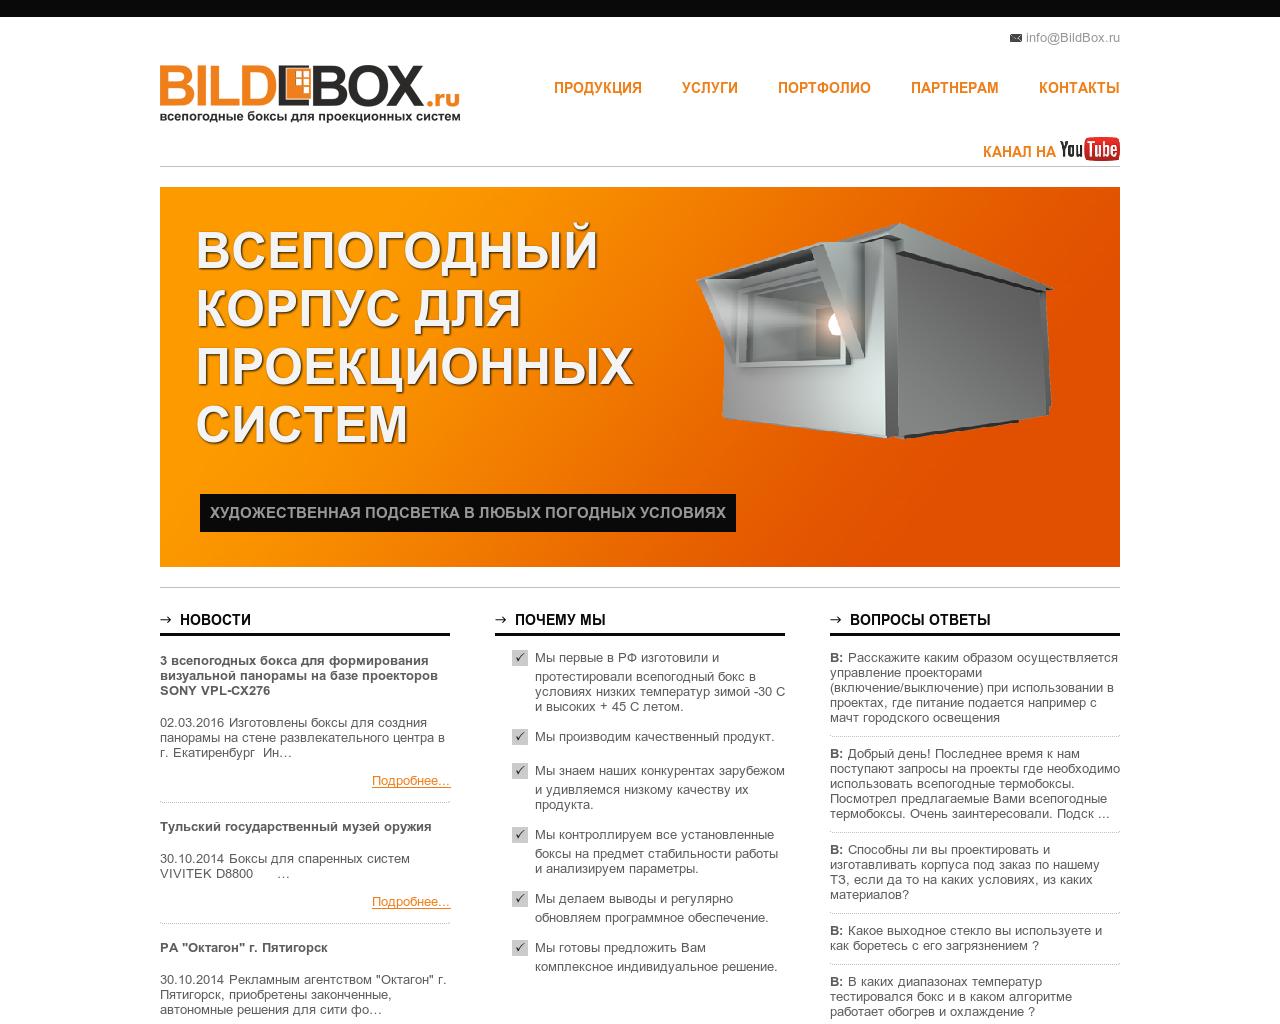 Изображение сайта bildbox.ru в разрешении 1280x1024